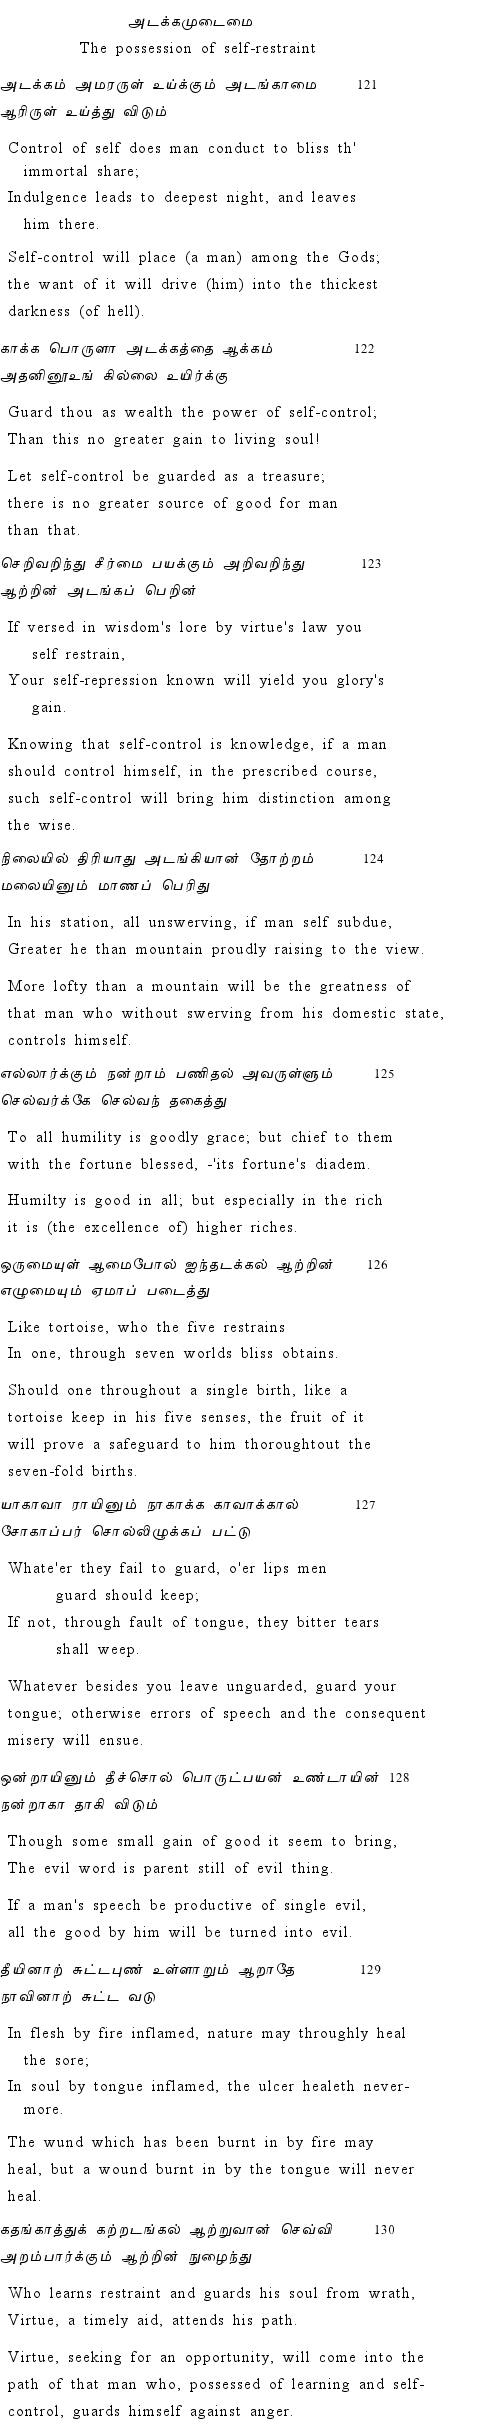 Text of Adhikaram 13